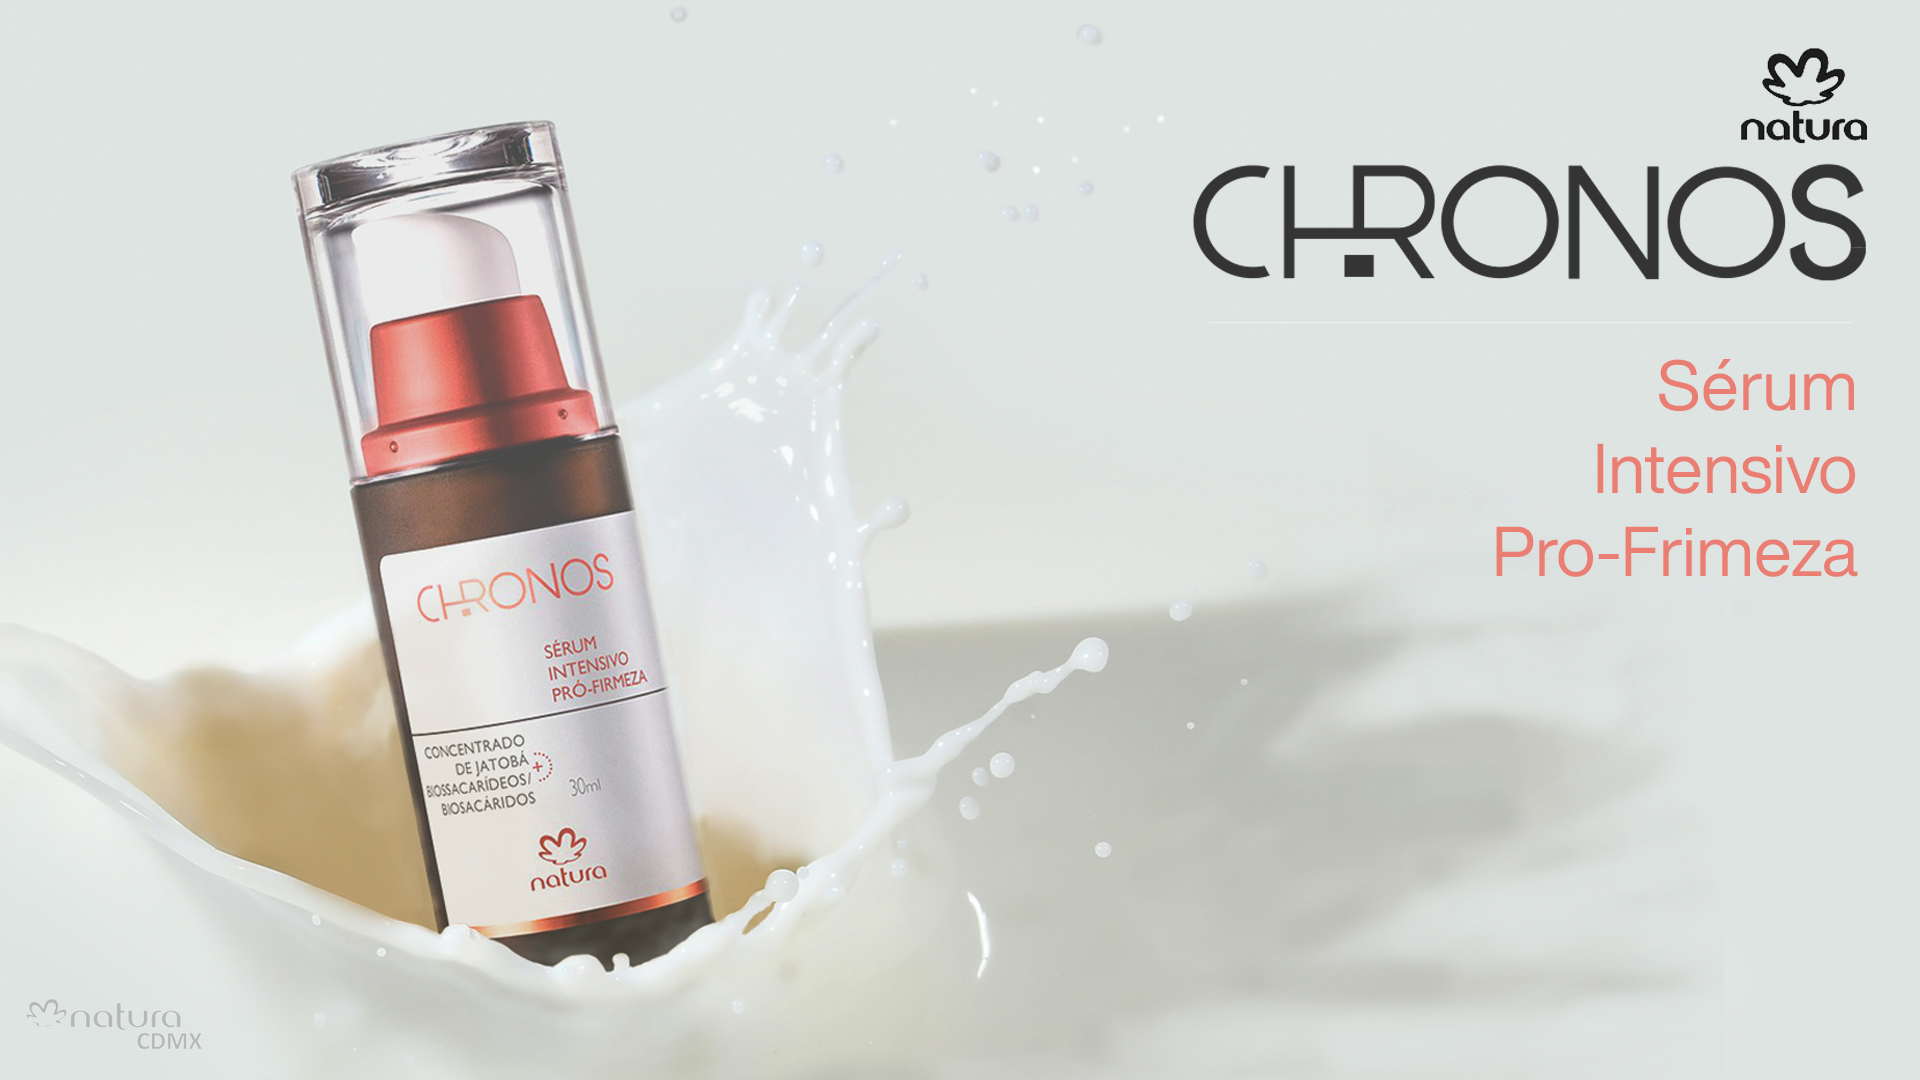 Cremas Chronos - Sérum intensivo pro-firmeza